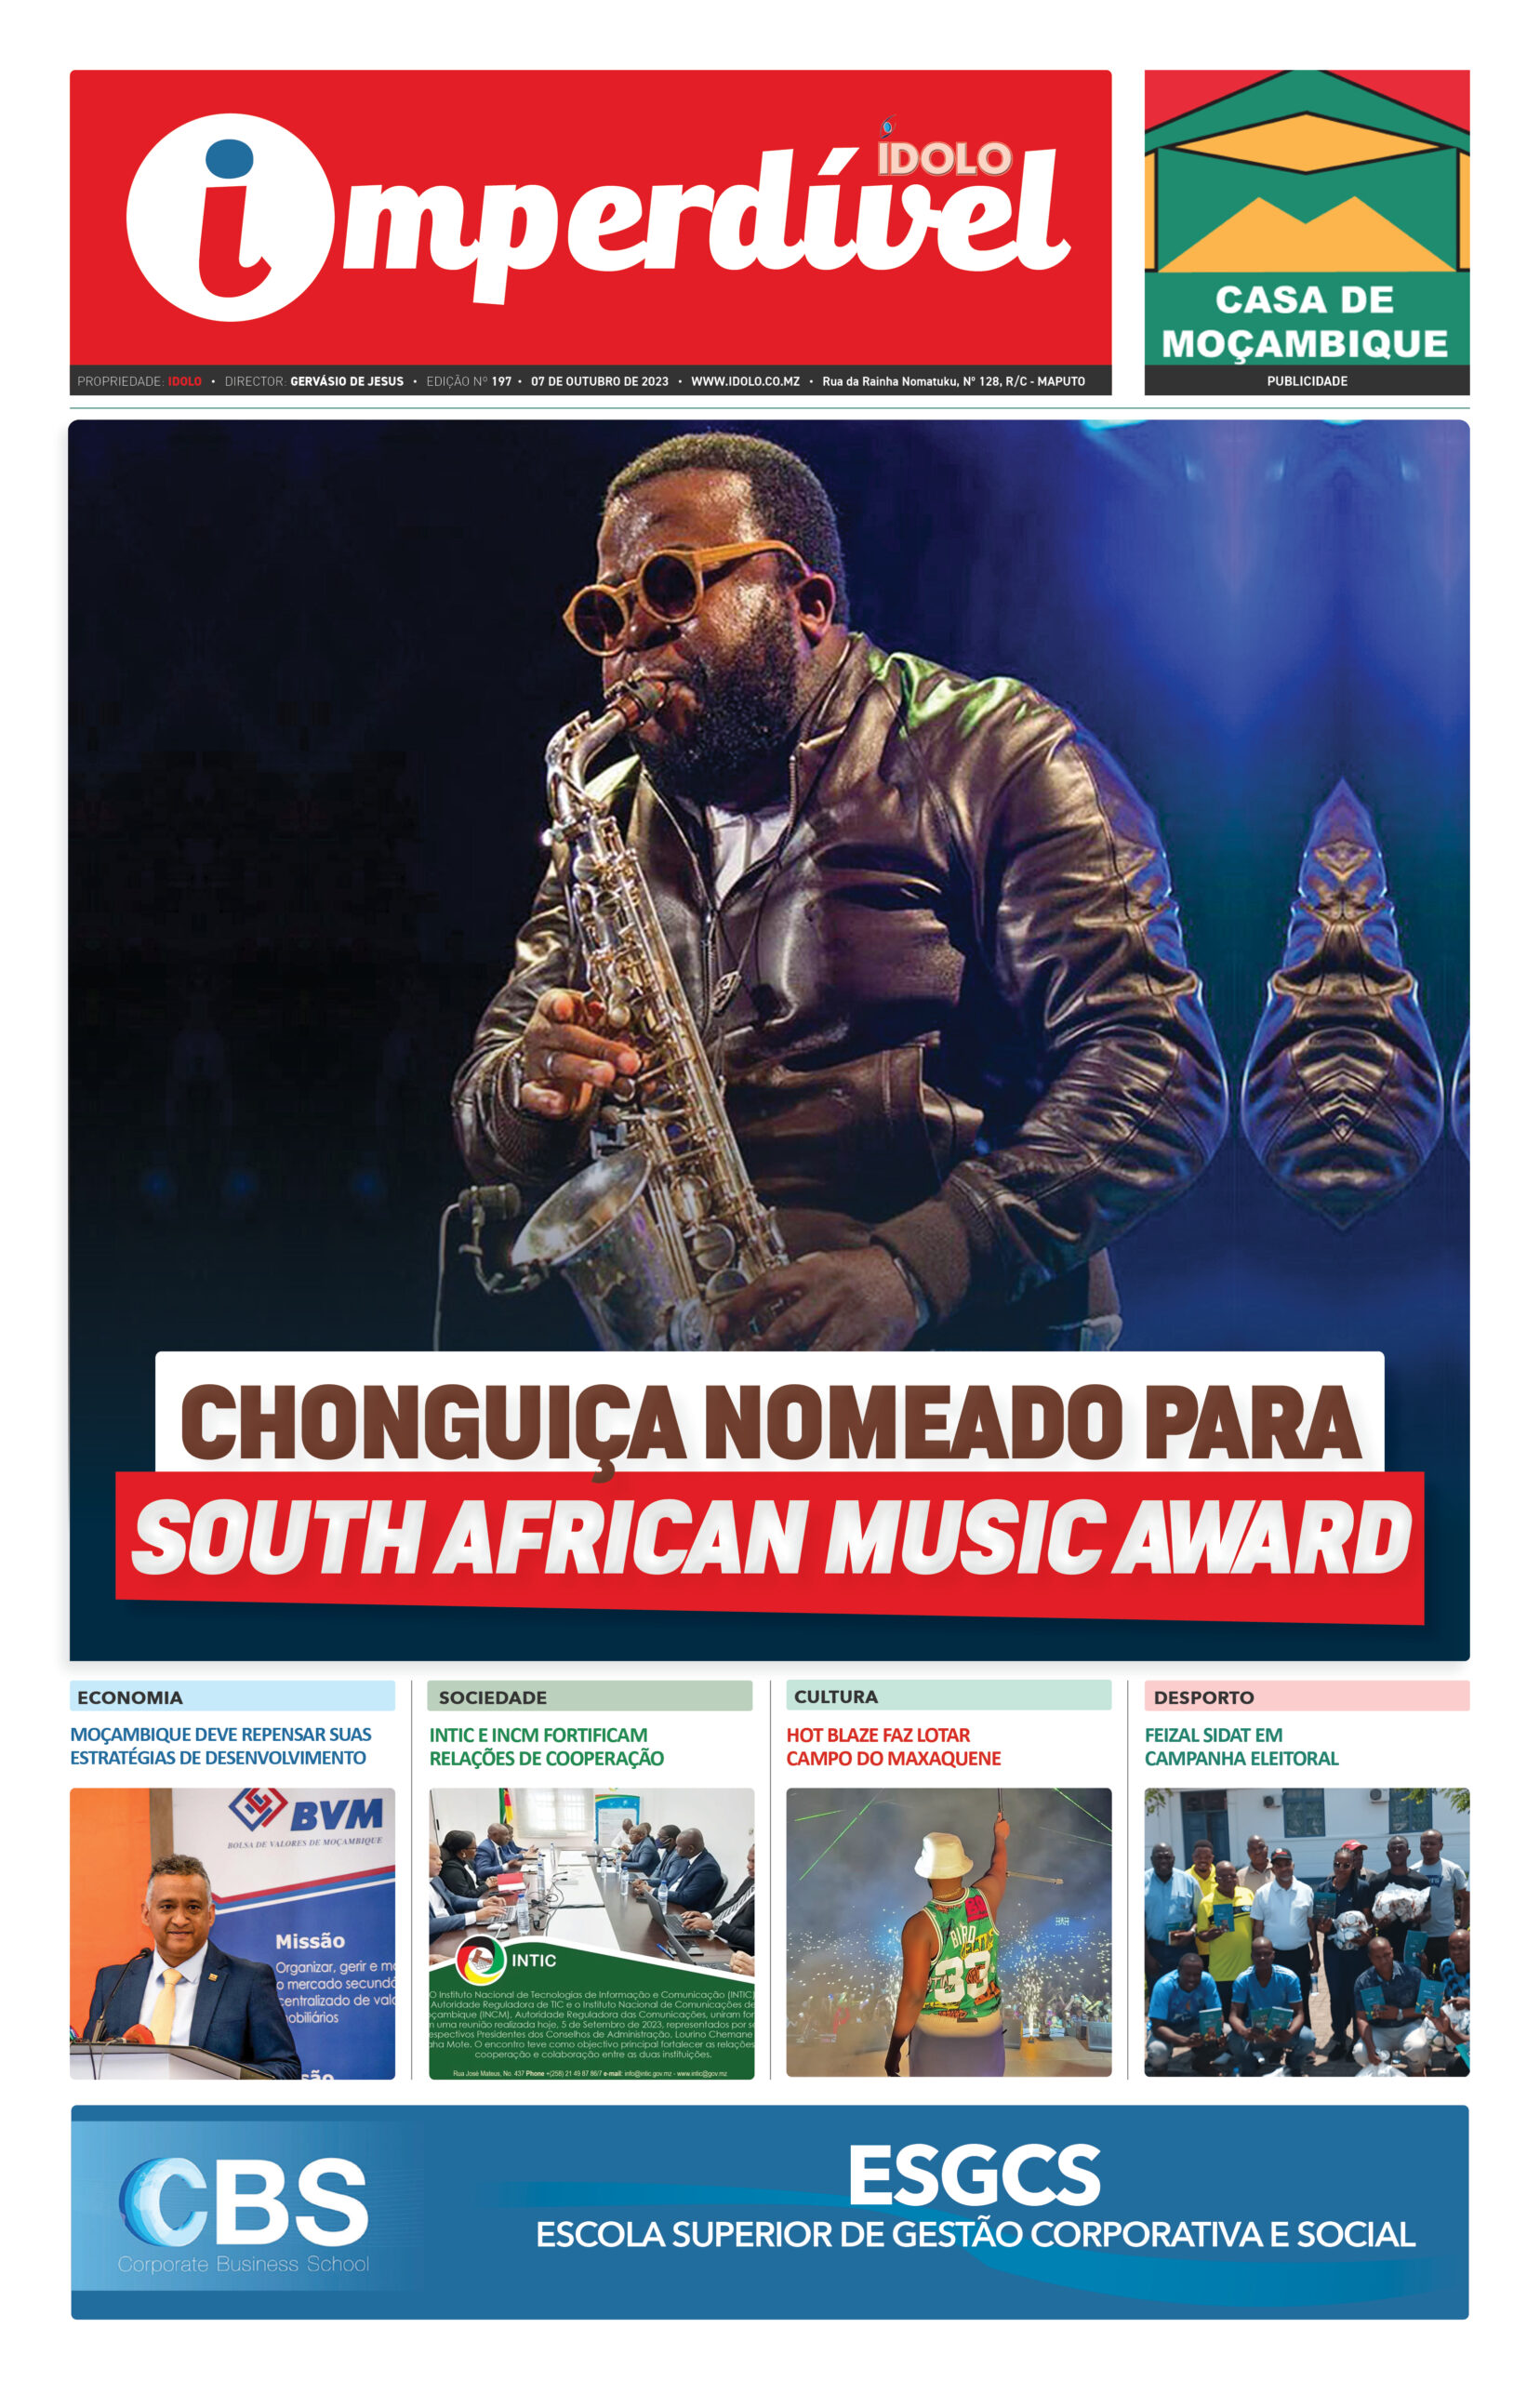 Moçambique destaca-se nas olimpíadas de xadrez - Revista IDOLO